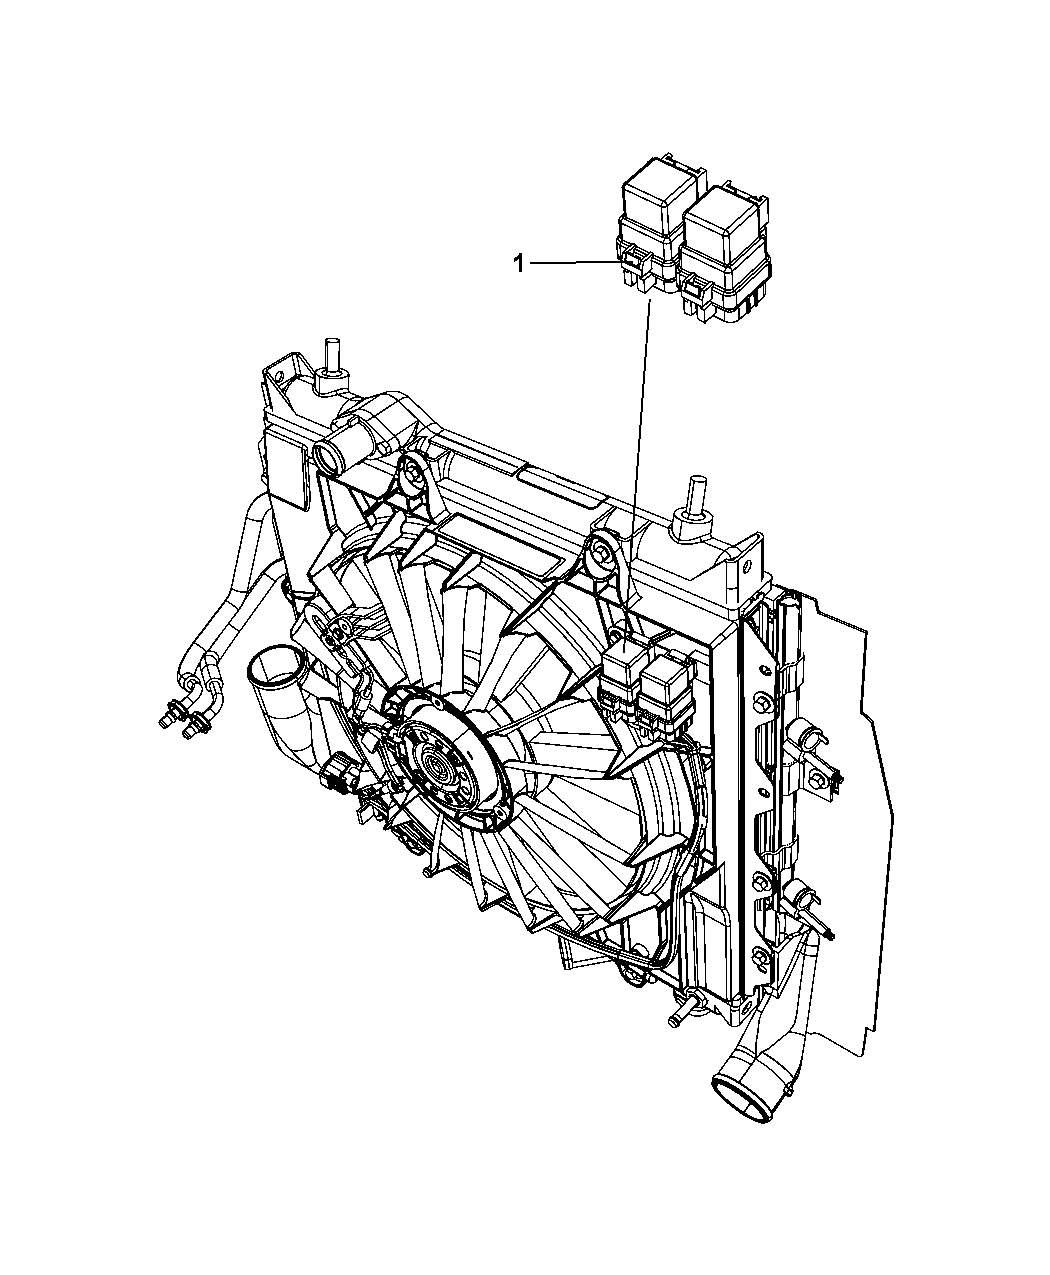 2004 Pt Cruiser Cooling Fan Wiring Diagram